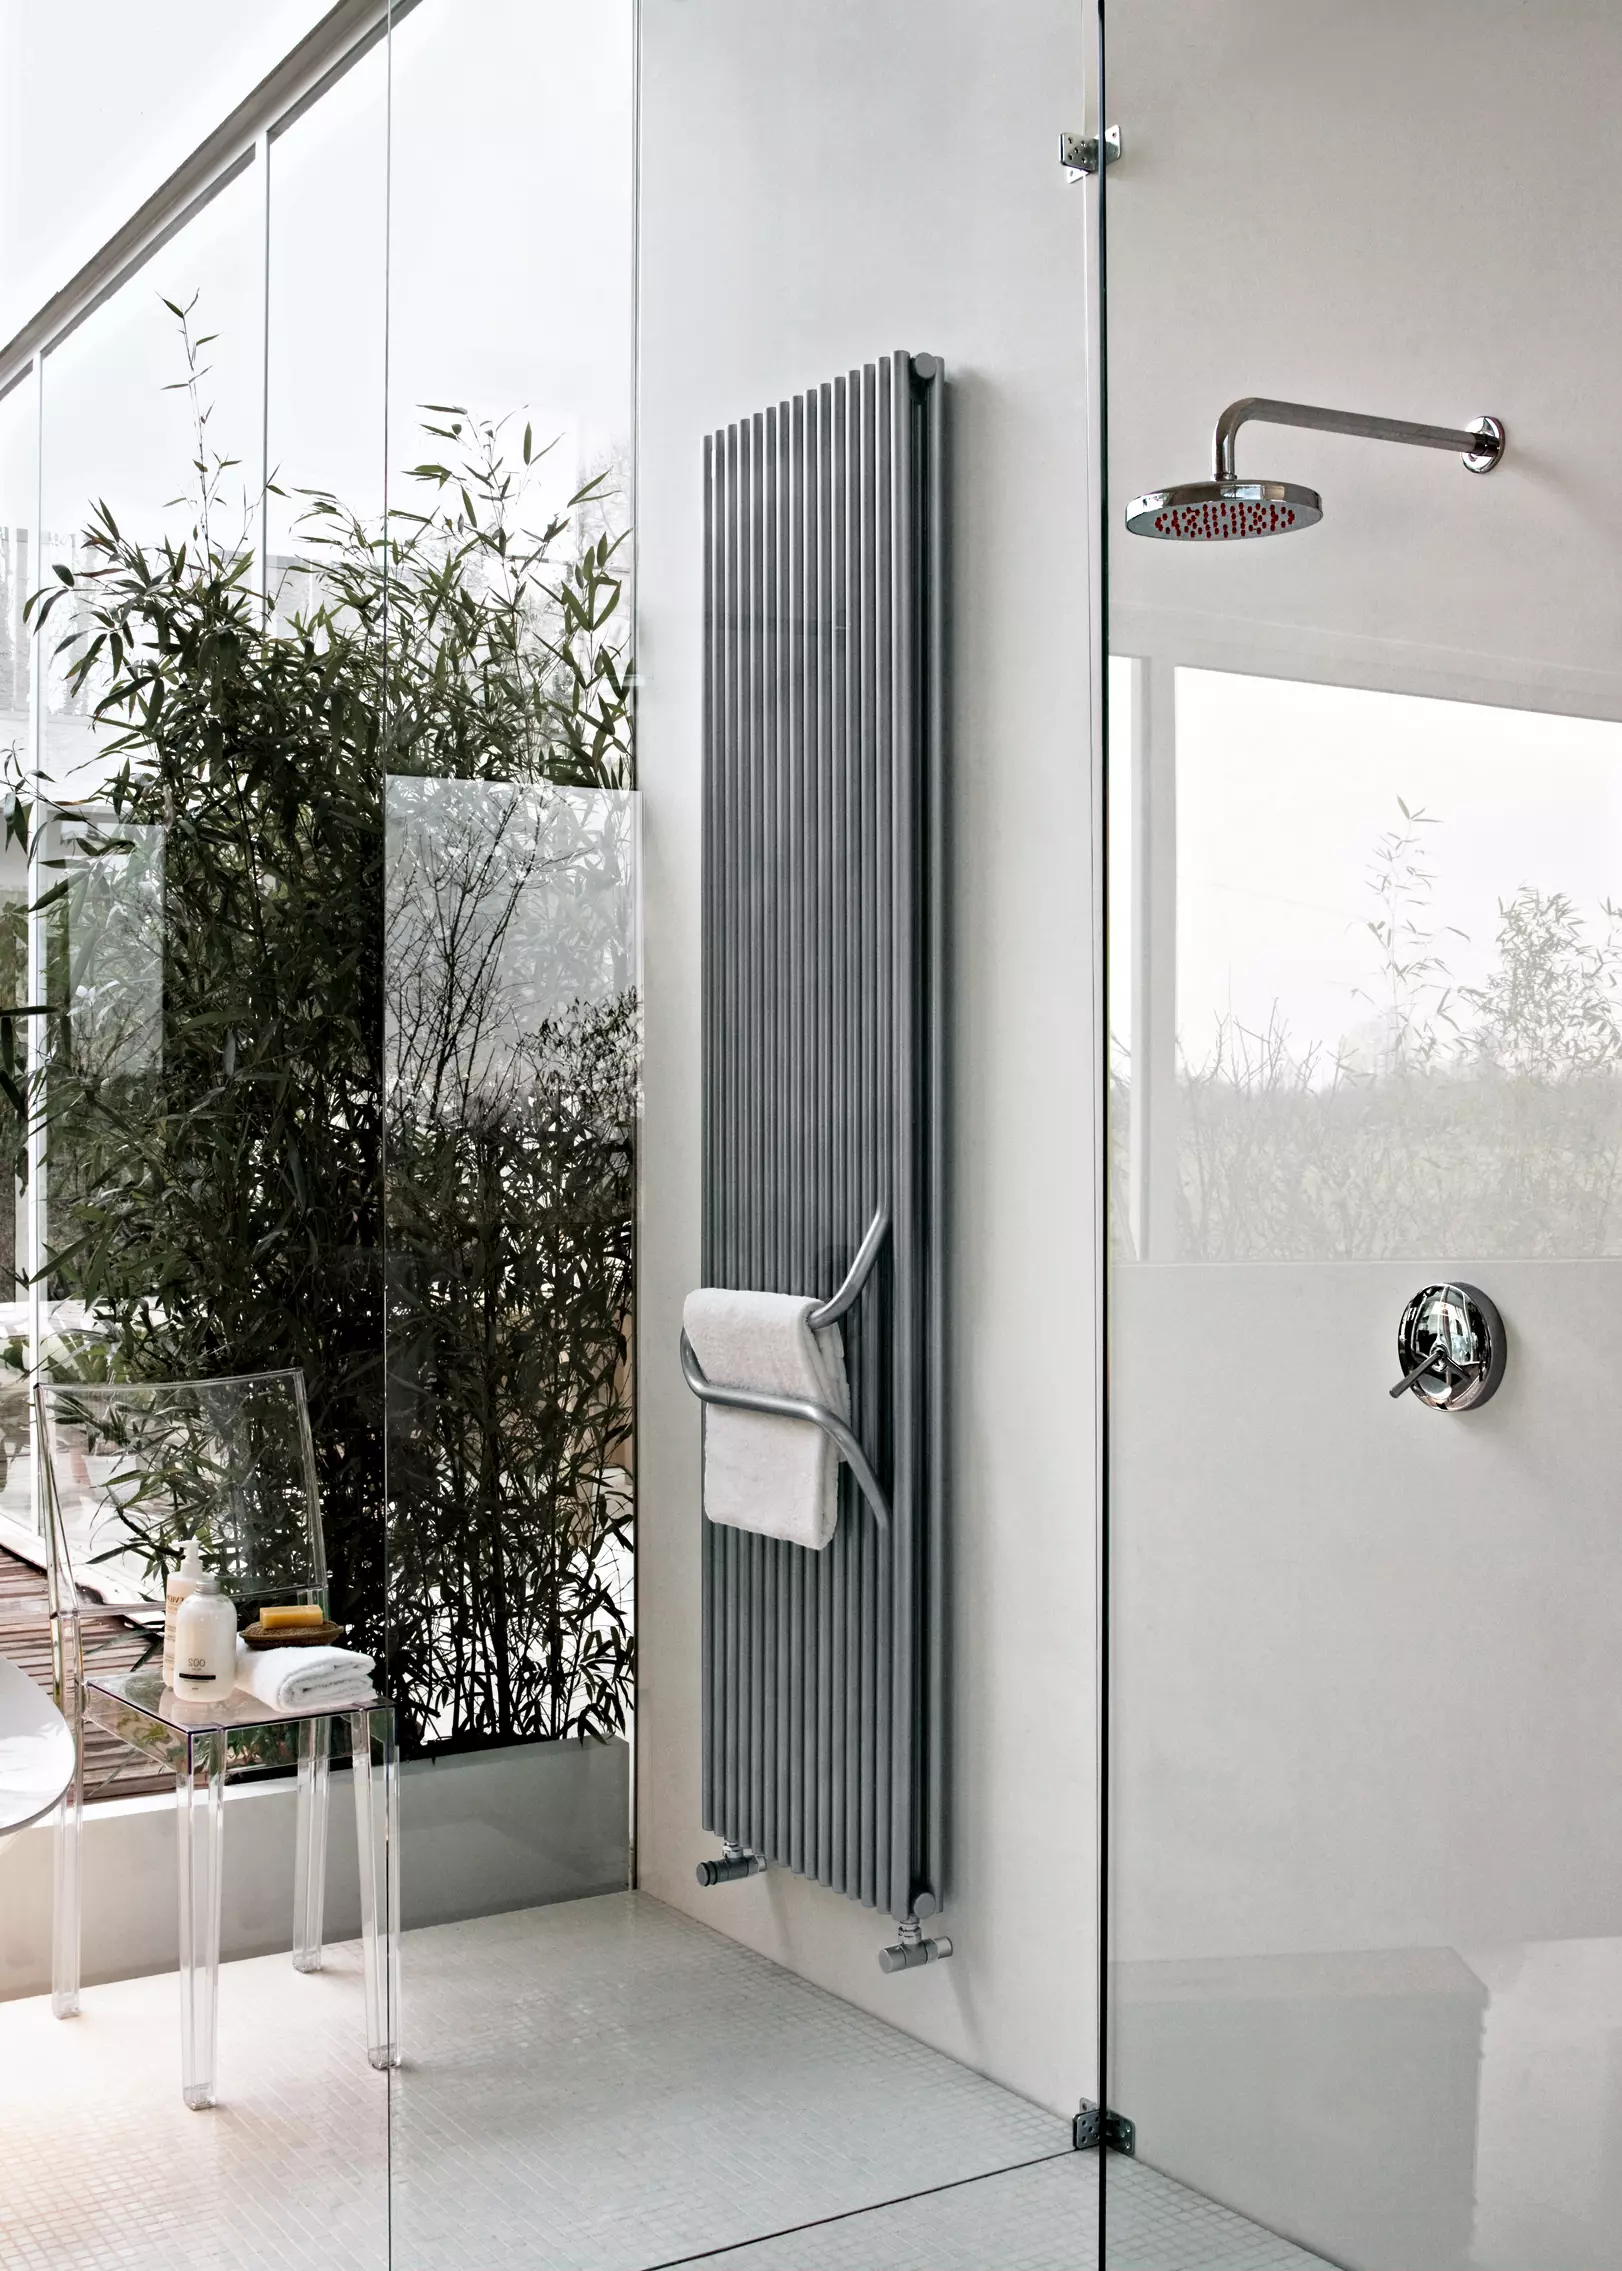 vertical steel radiator with towel rail in bathroom